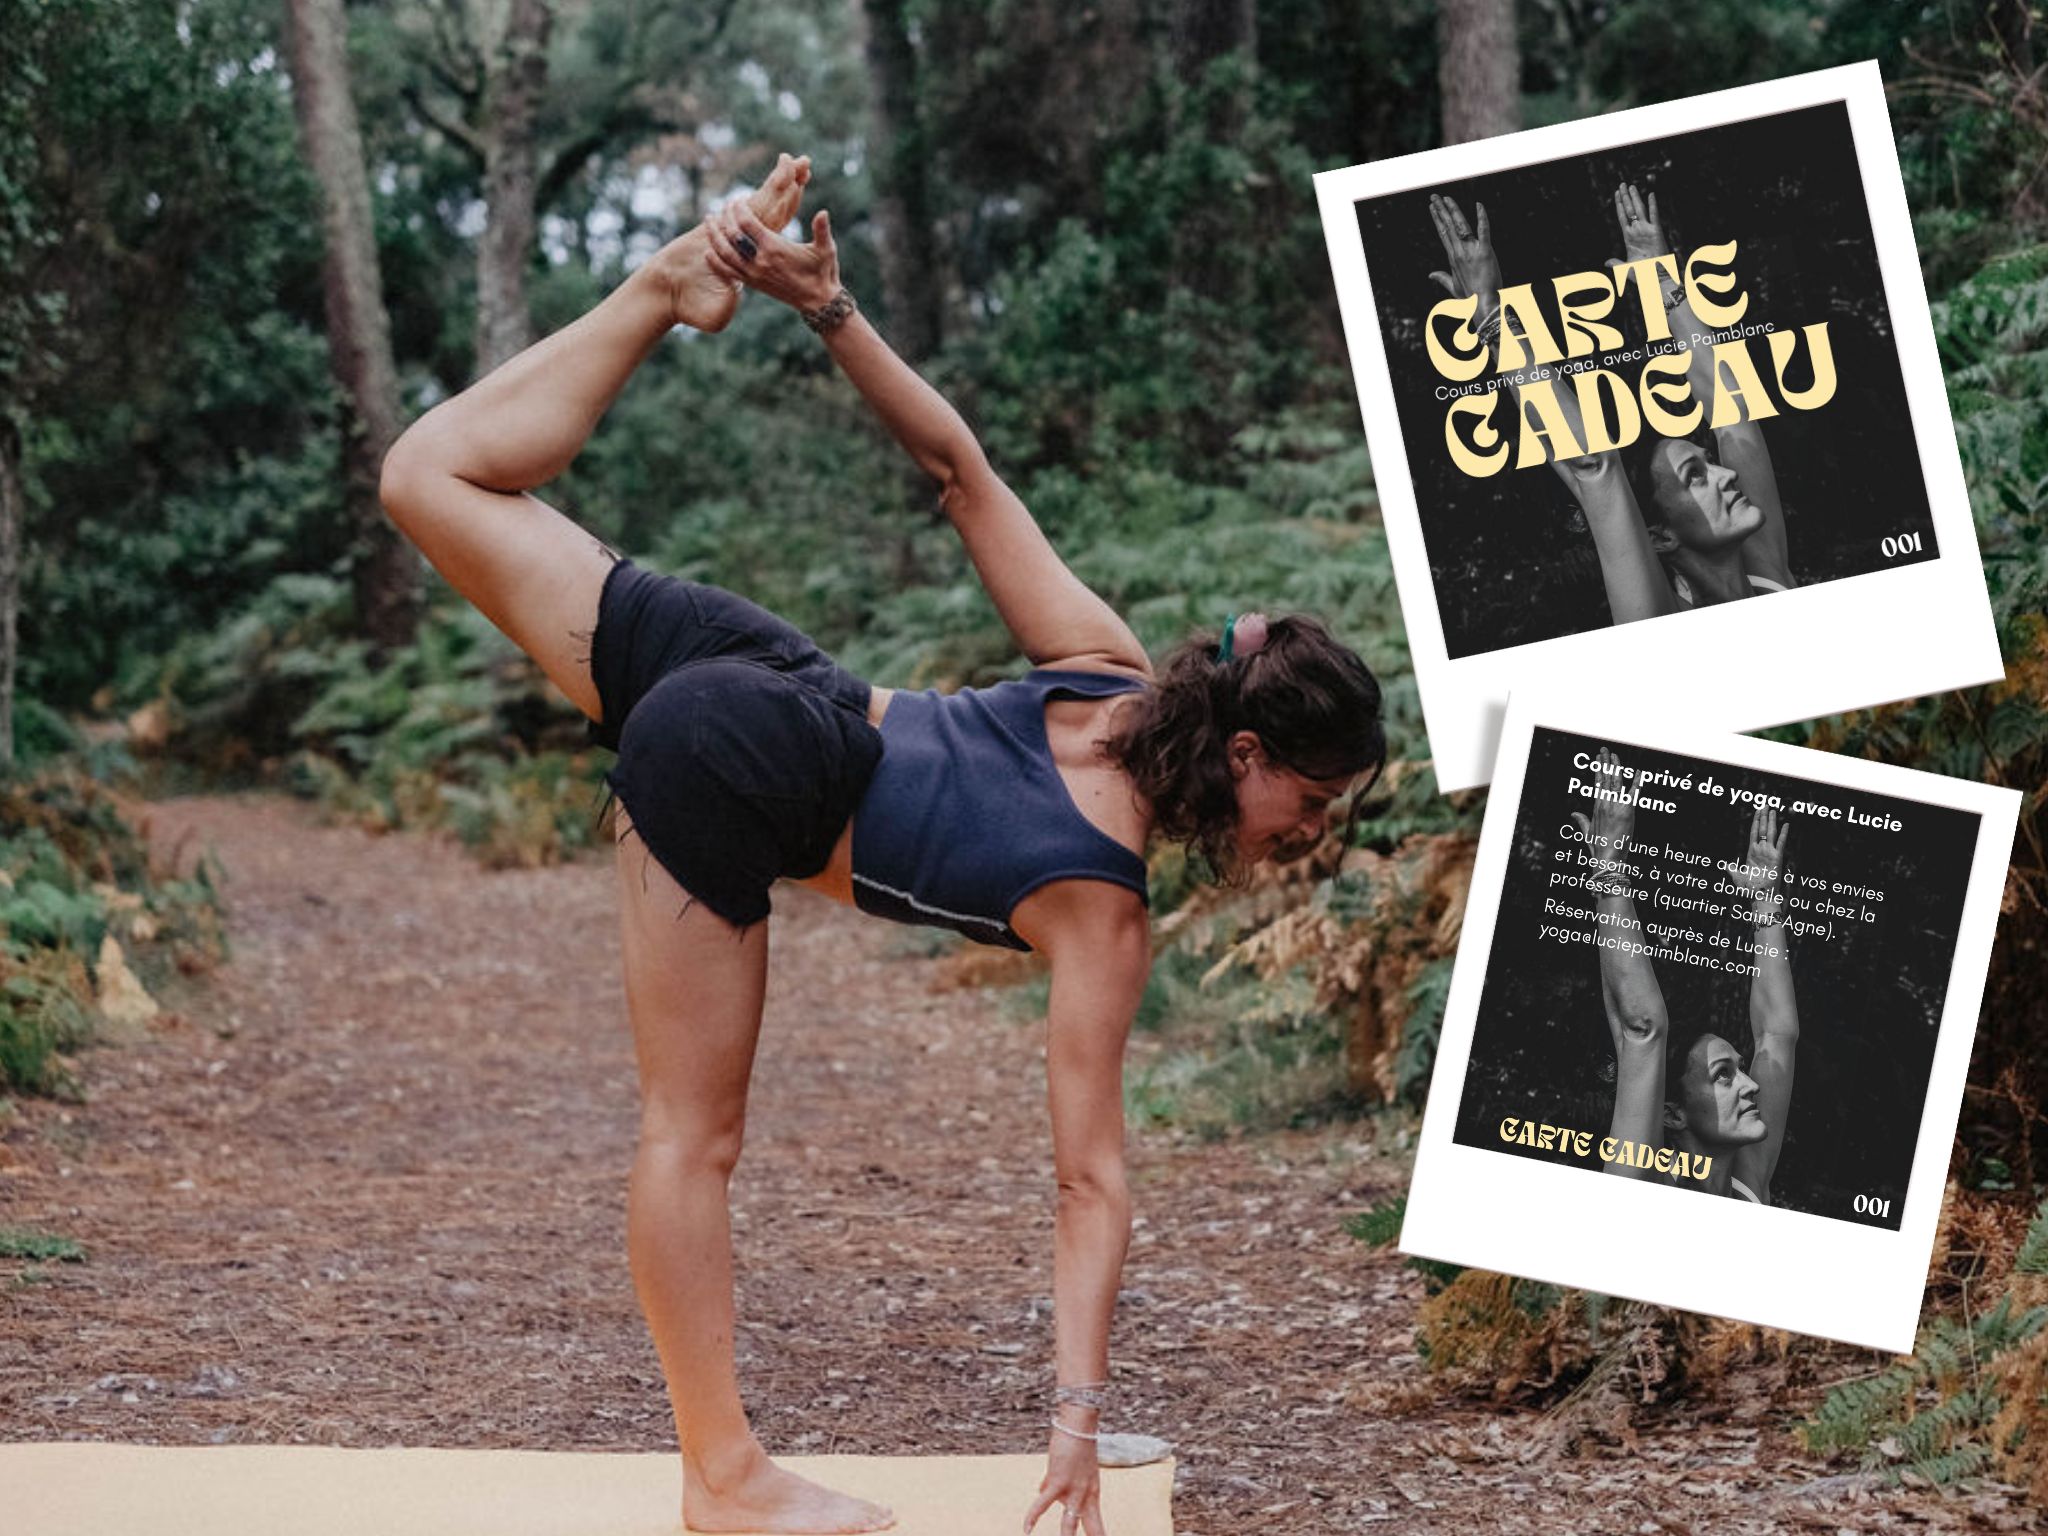 Cours de yoga à Toulouse : carte cadeau